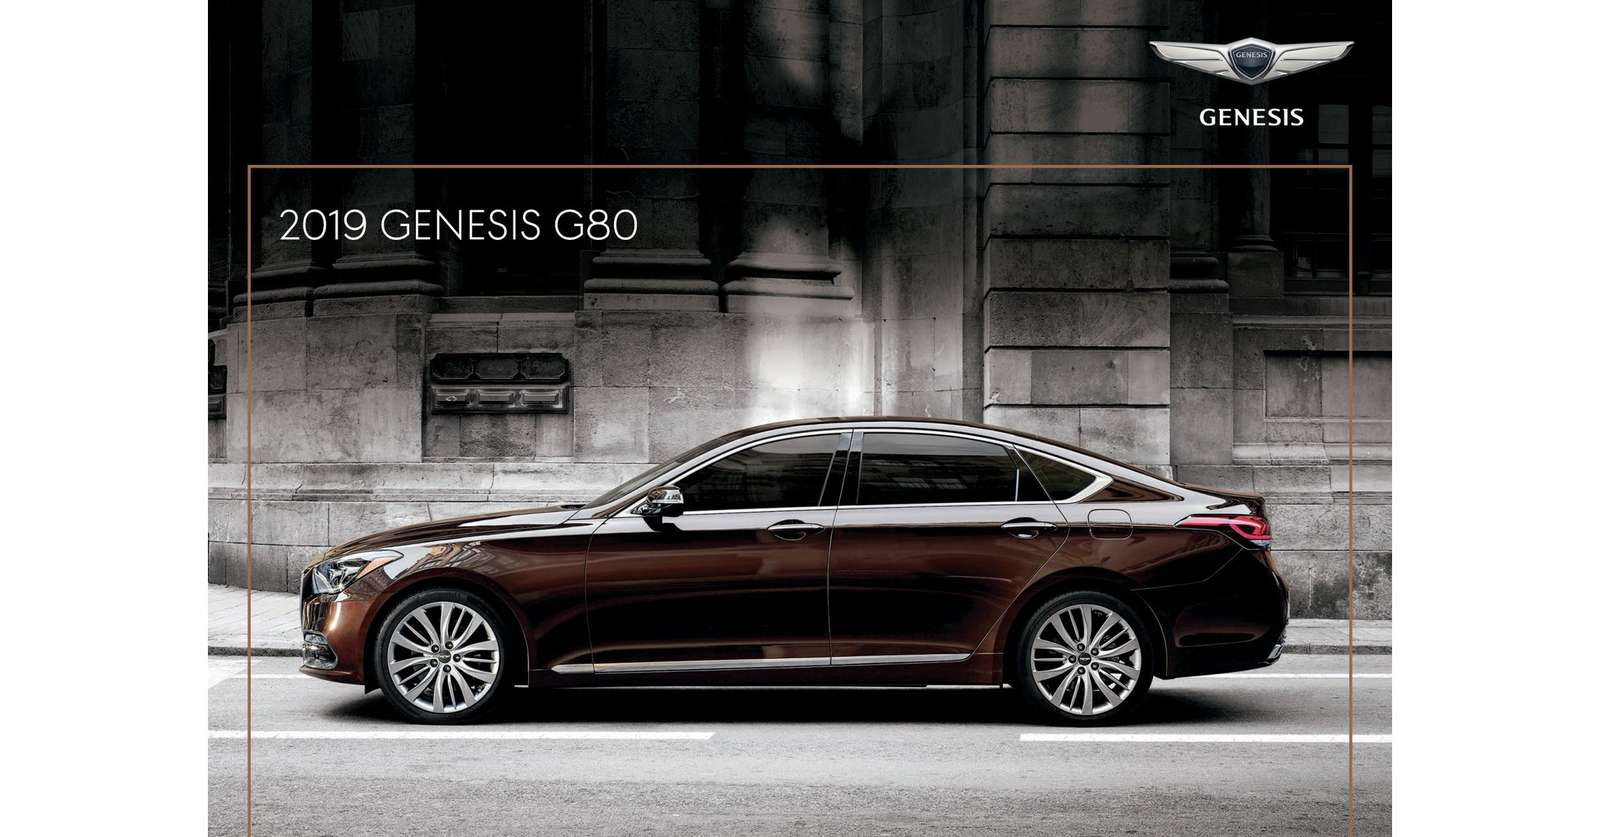 Genesis G80 pussel online från foto